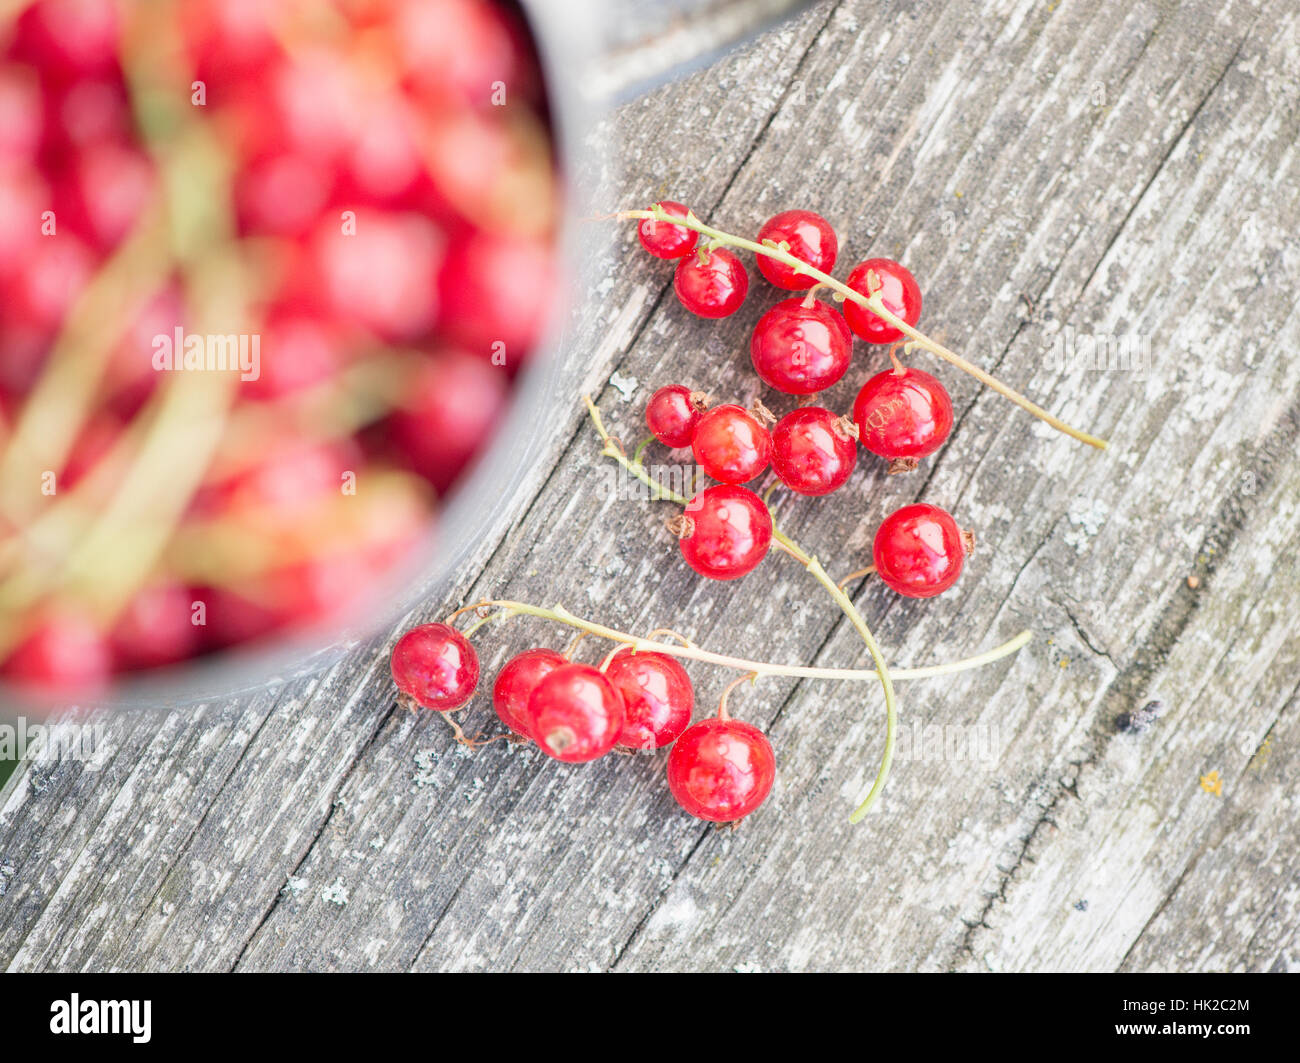 Frisch geerntete rote Johannisbeere Beeren in Großaufnahme auf Gartentisch. Sommer-Lifestyle-Szene ohne Menschen. Stockfoto